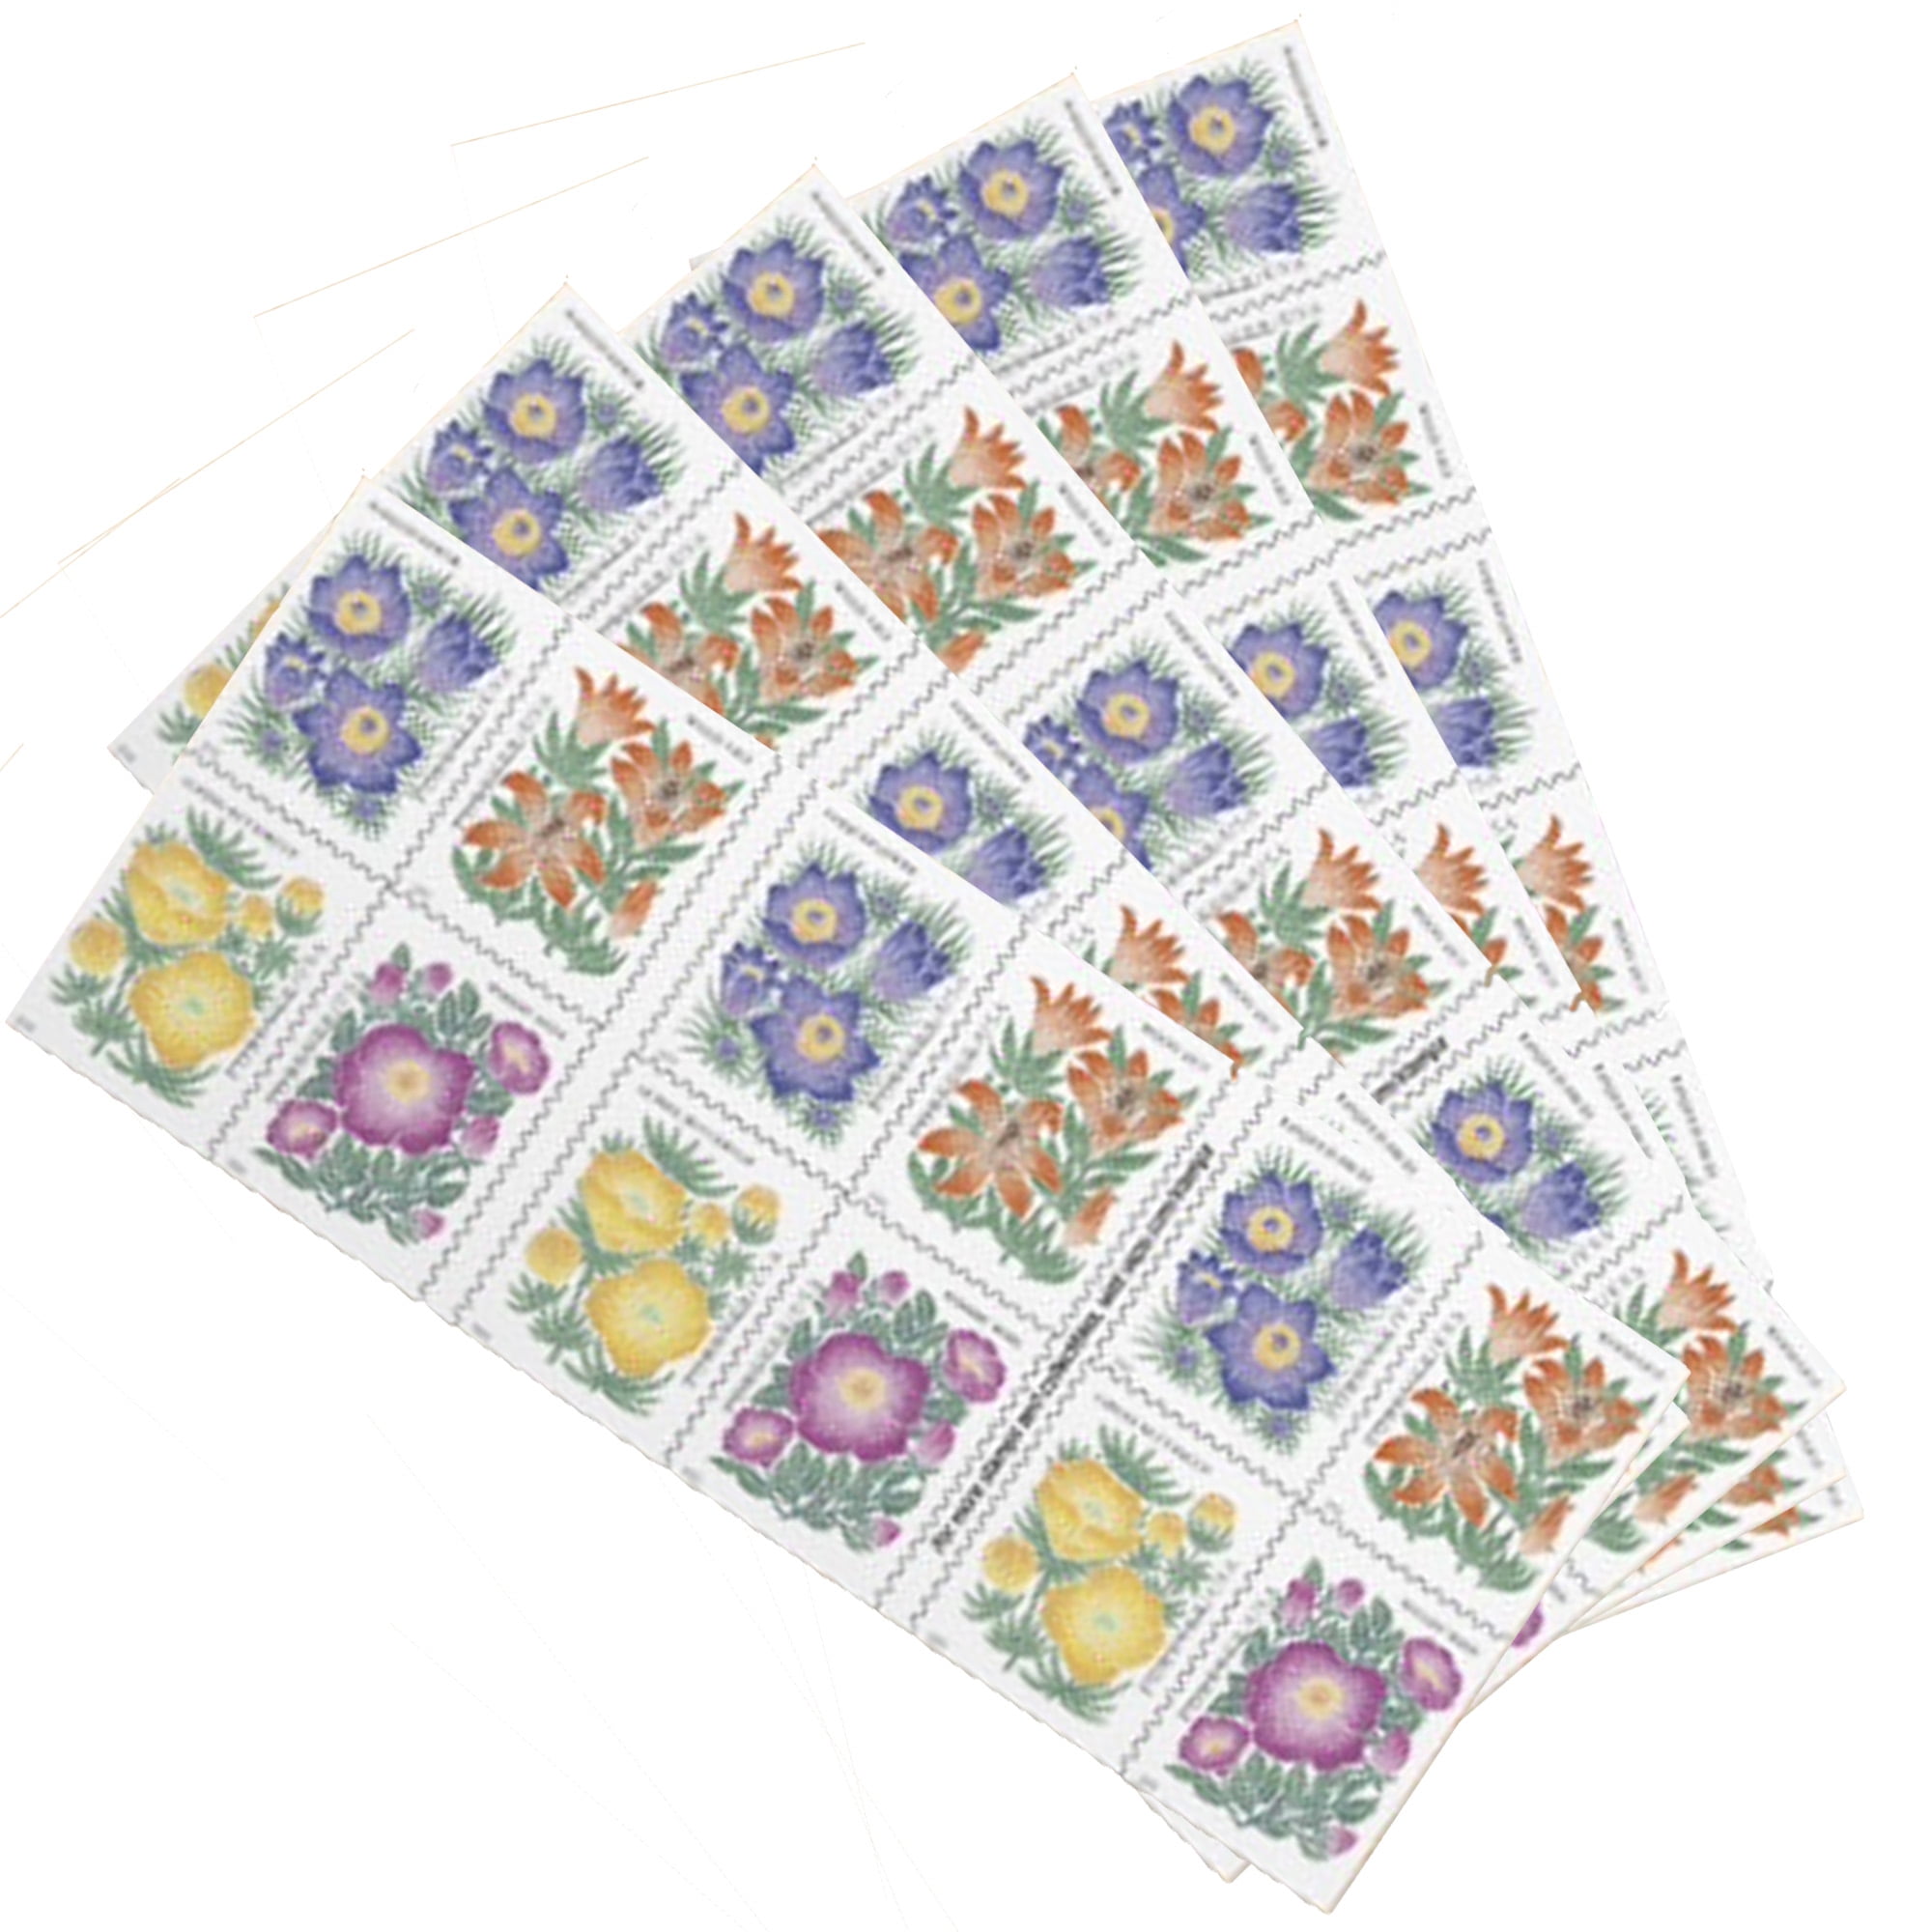 20 USPS Wedding Rose Forever Stamps